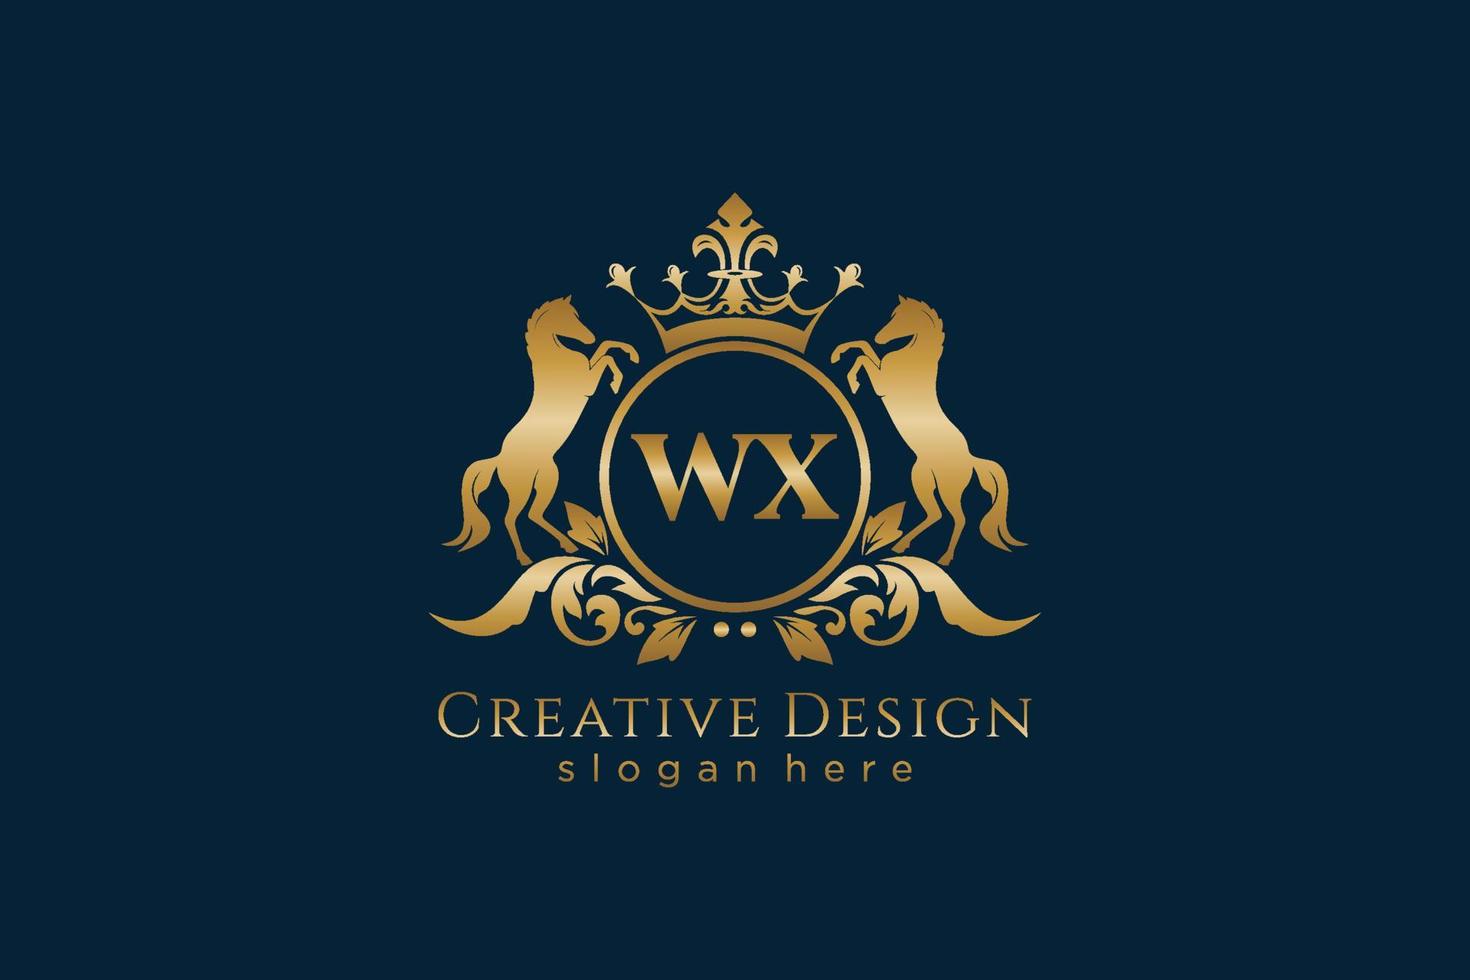 crista dourada retrô inicial wx com círculo e dois cavalos, modelo de crachá com pergaminhos e coroa real - perfeito para projetos de marca luxuosos vetor